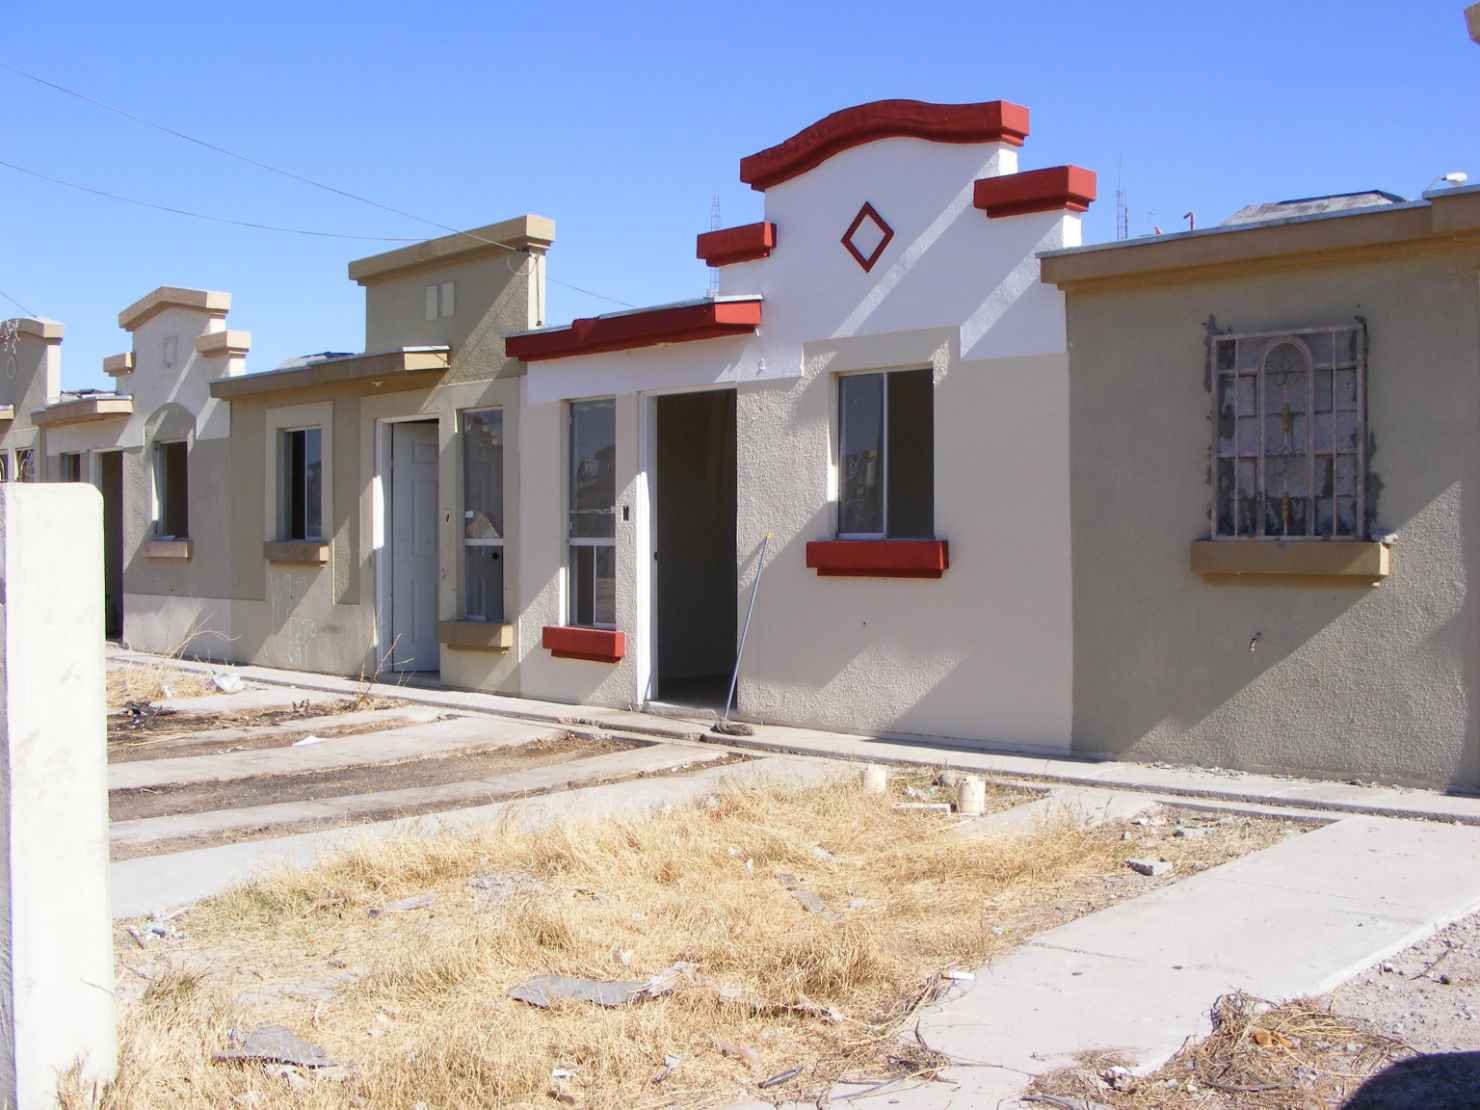 Ofertan vivienda recuperada en Ciudad Juárez - - Centro Urbano